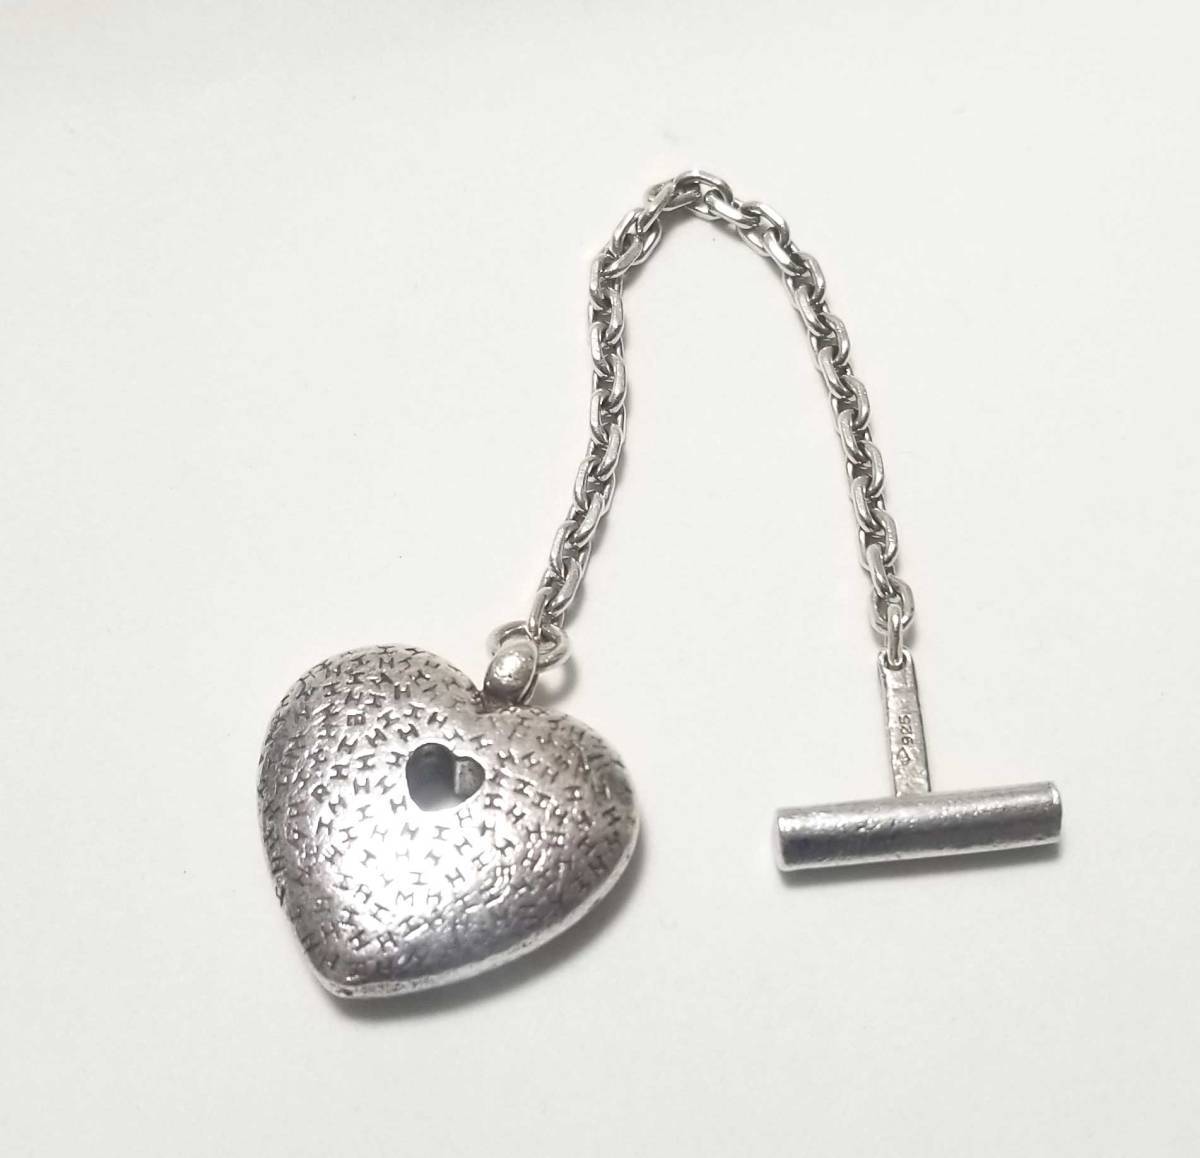  Hermes в форме сердечка Heart H Mark цепочка для ключей брелок для ключа серебряный 925 HERMES сумка очарование 